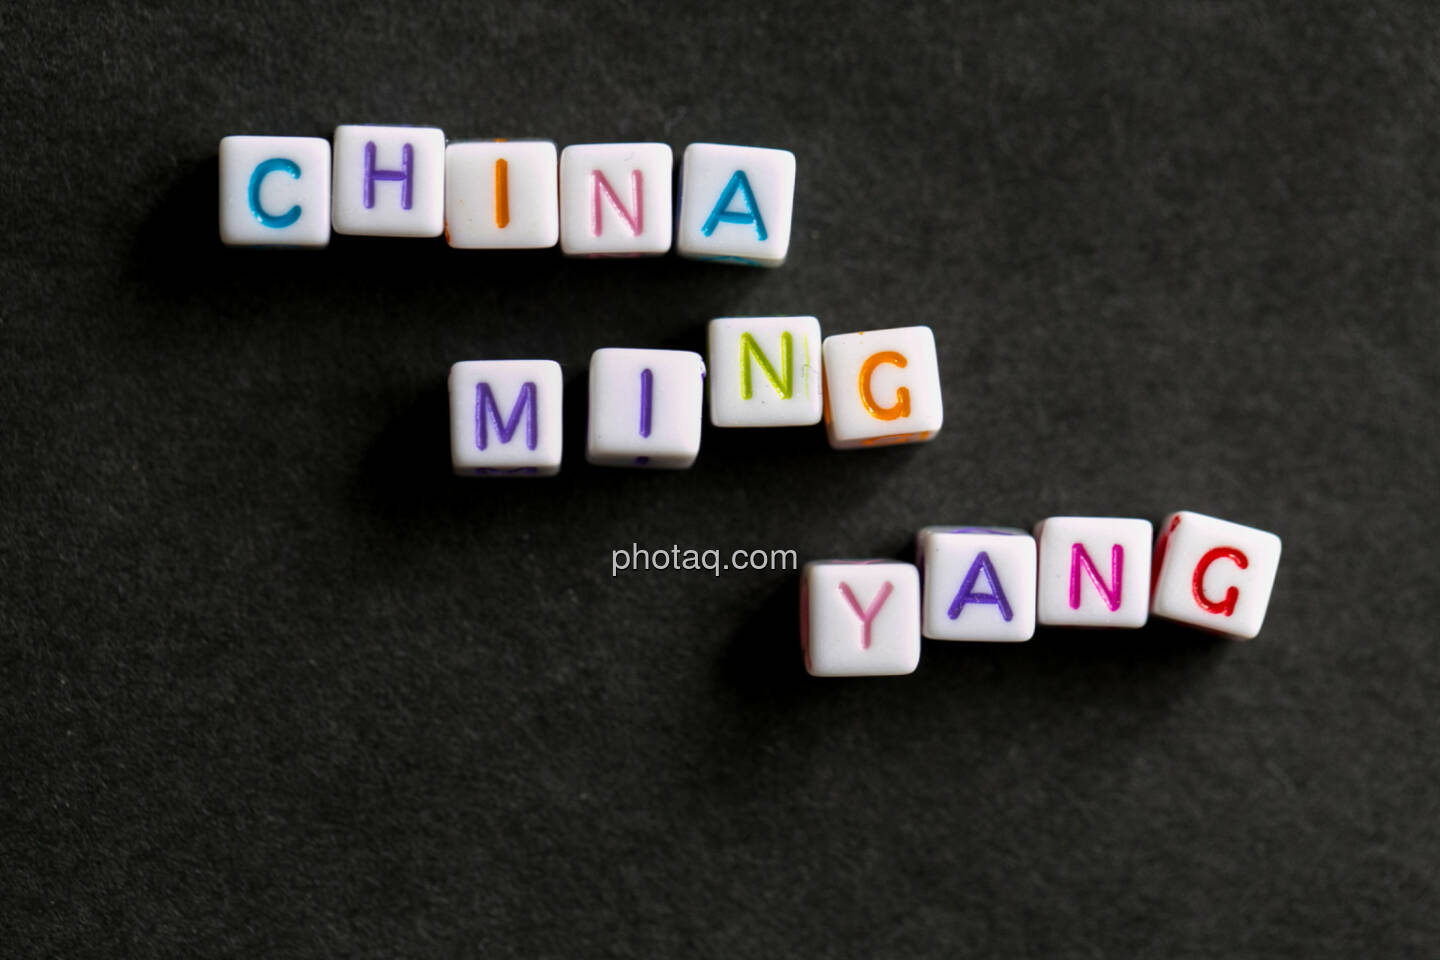 China Ming Yang